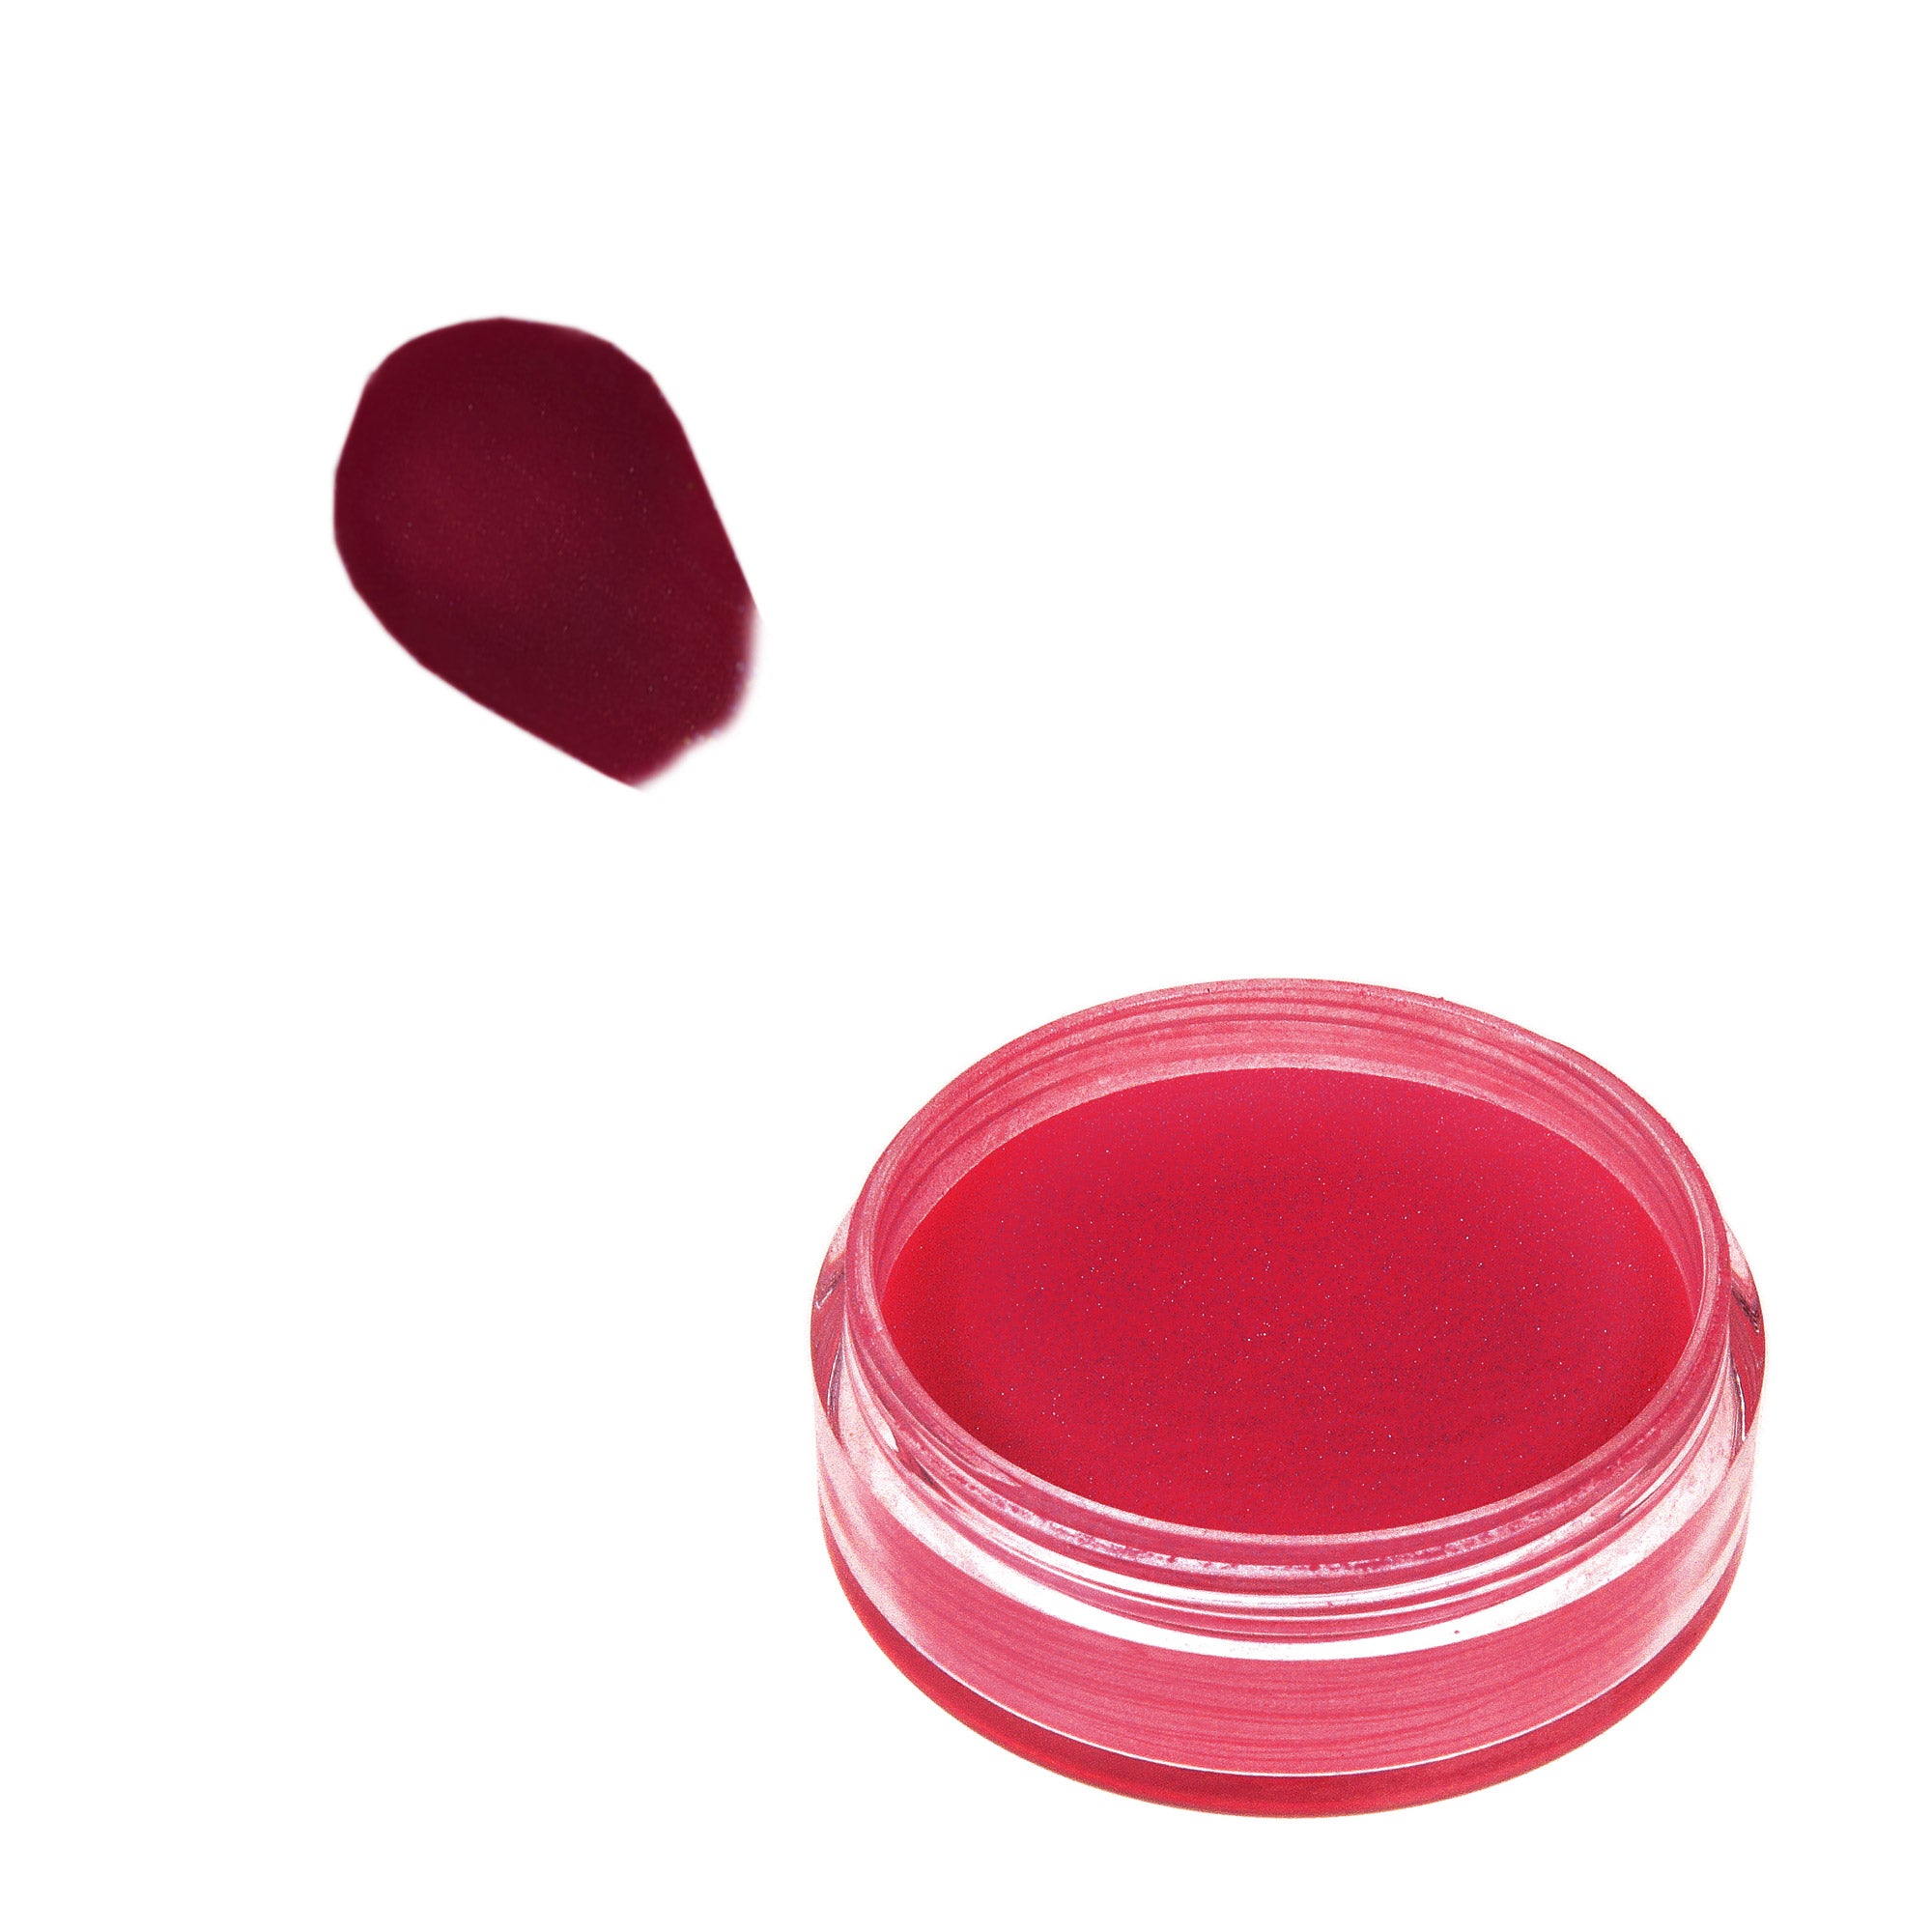 Acrylic Powder 10 g - Red